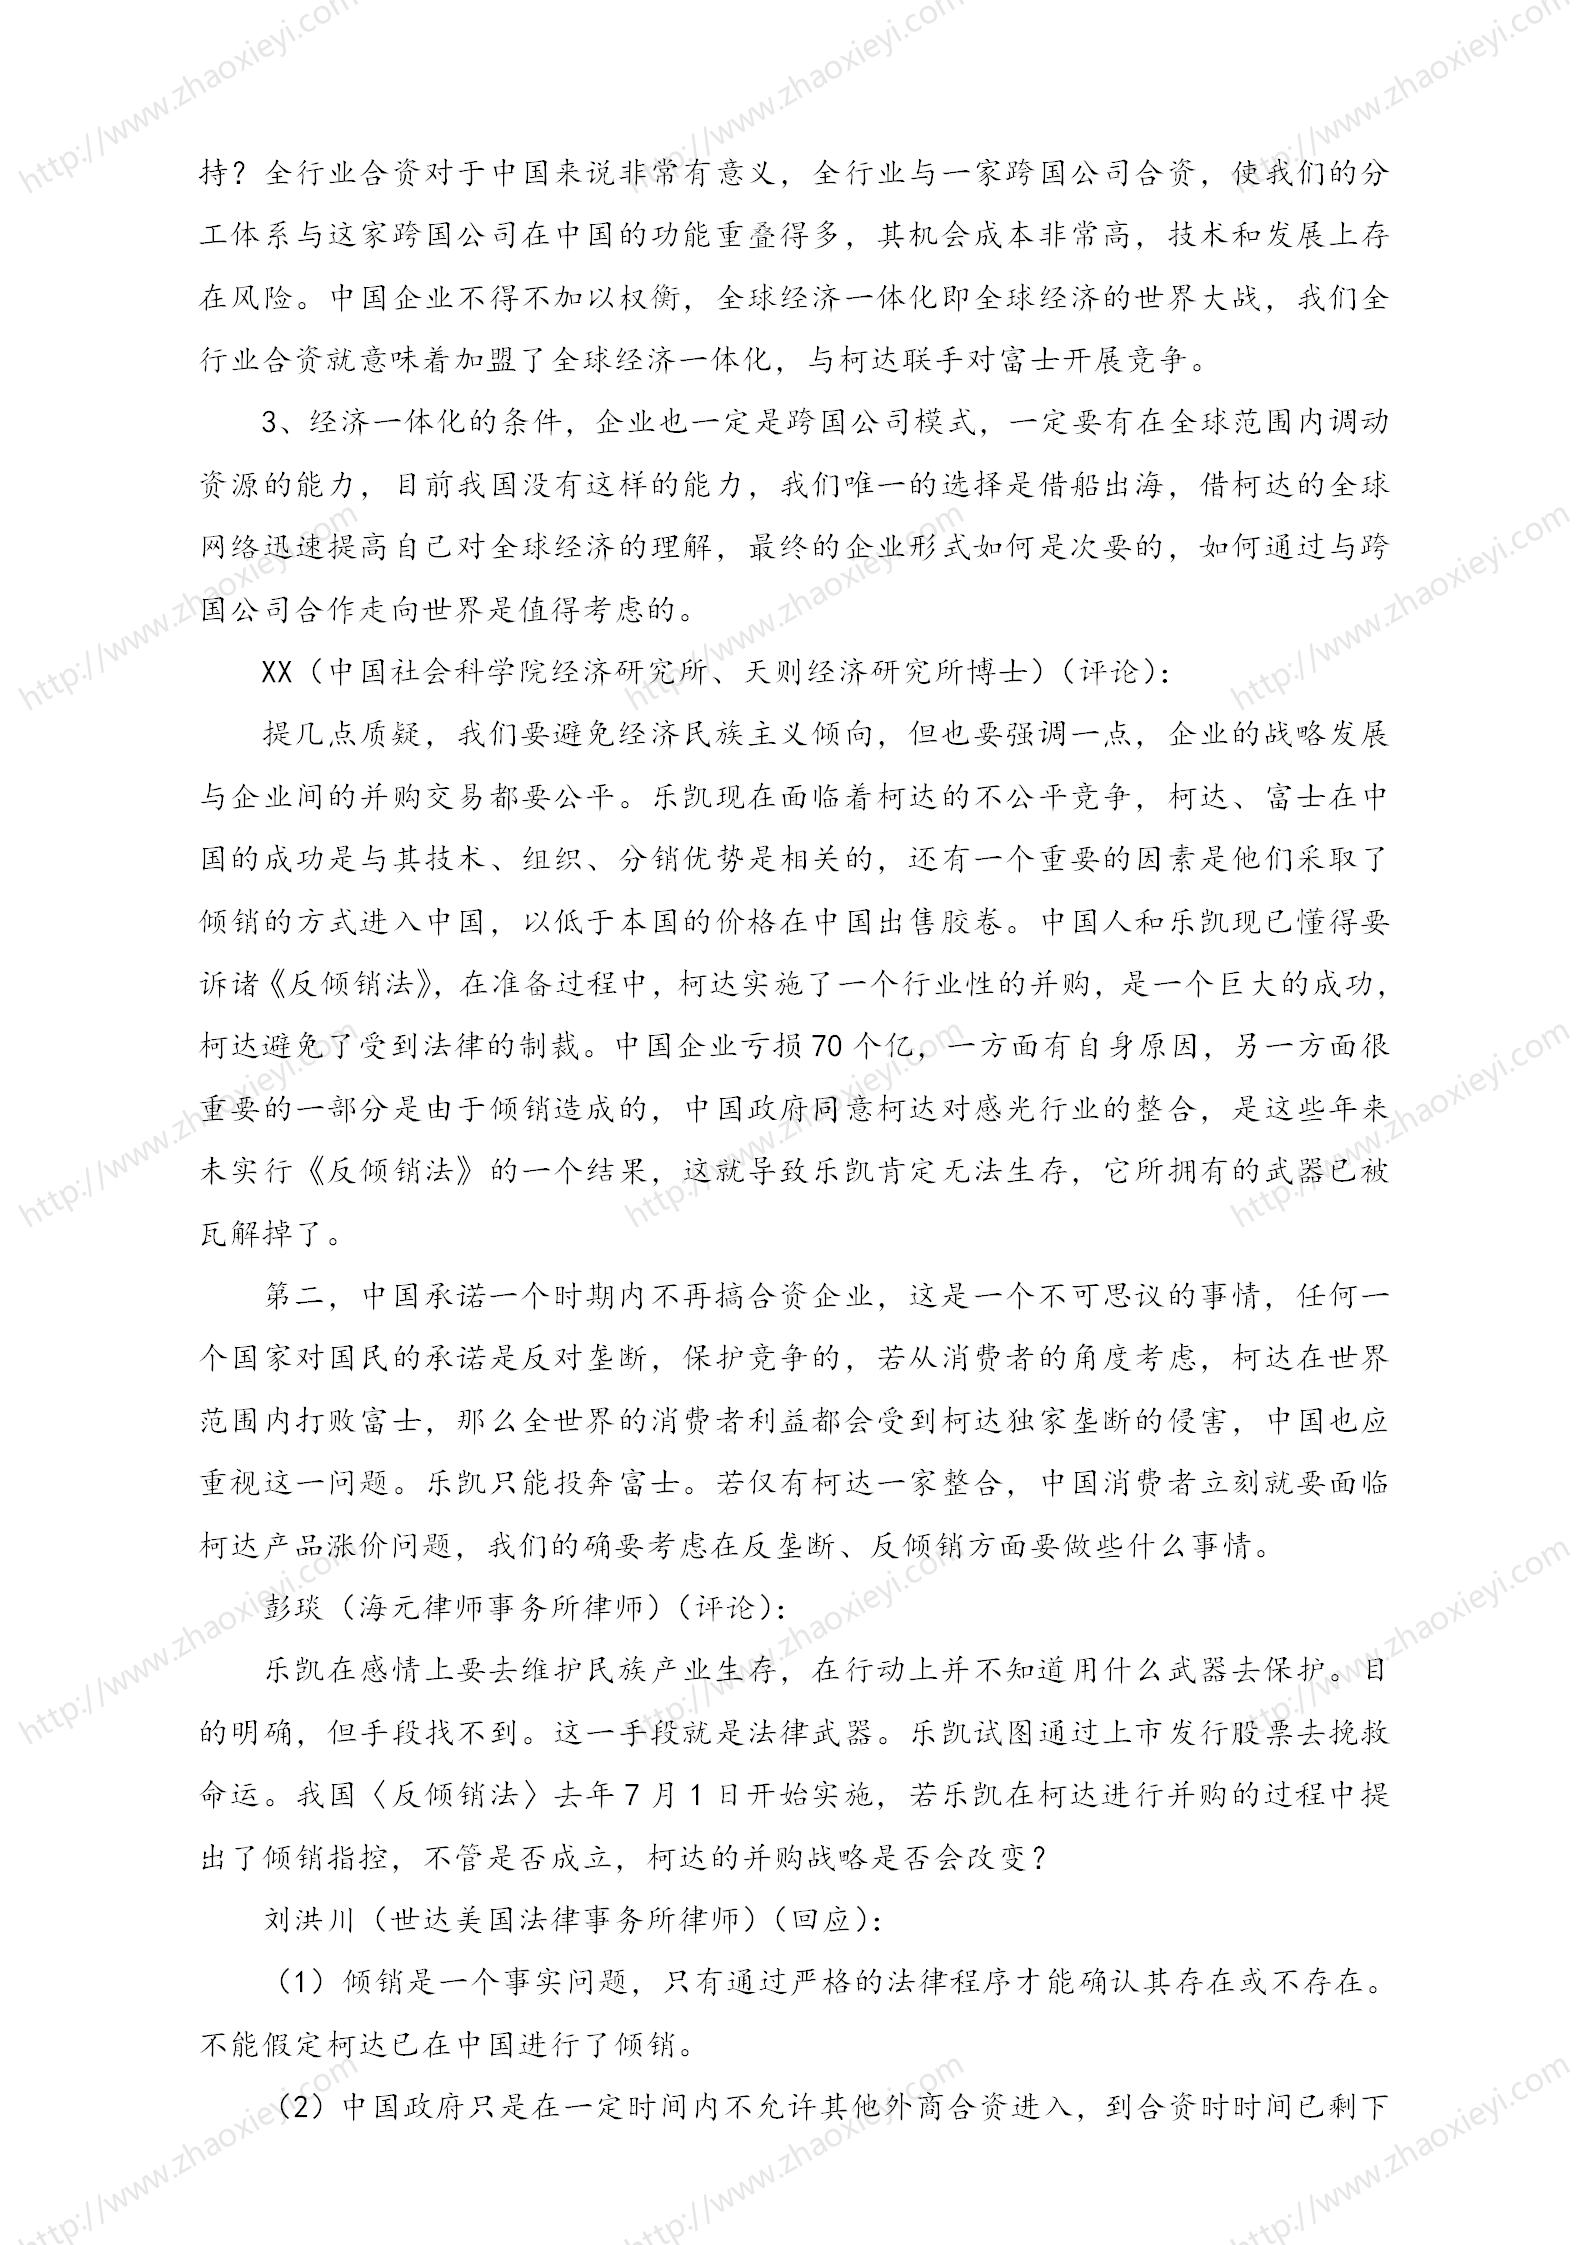 中国企业并购经典案例_164.jpg